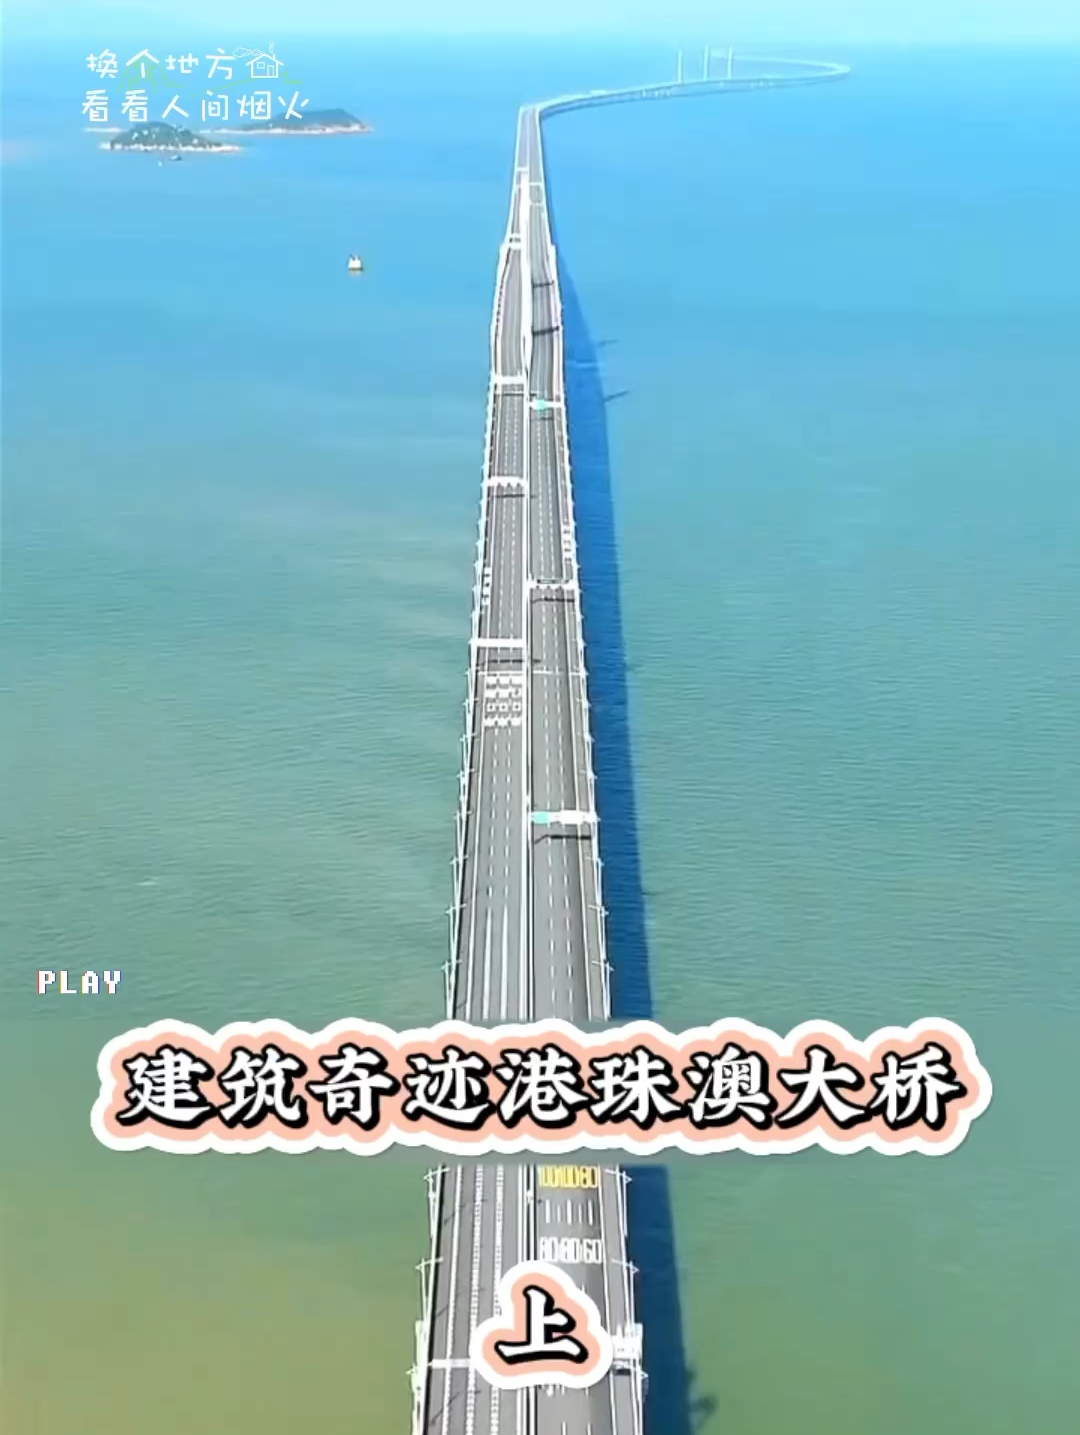 美国人至今都不敢相信 #旅游推荐官 #旅游了解中国 #五一去哪玩 #珠港澳大桥